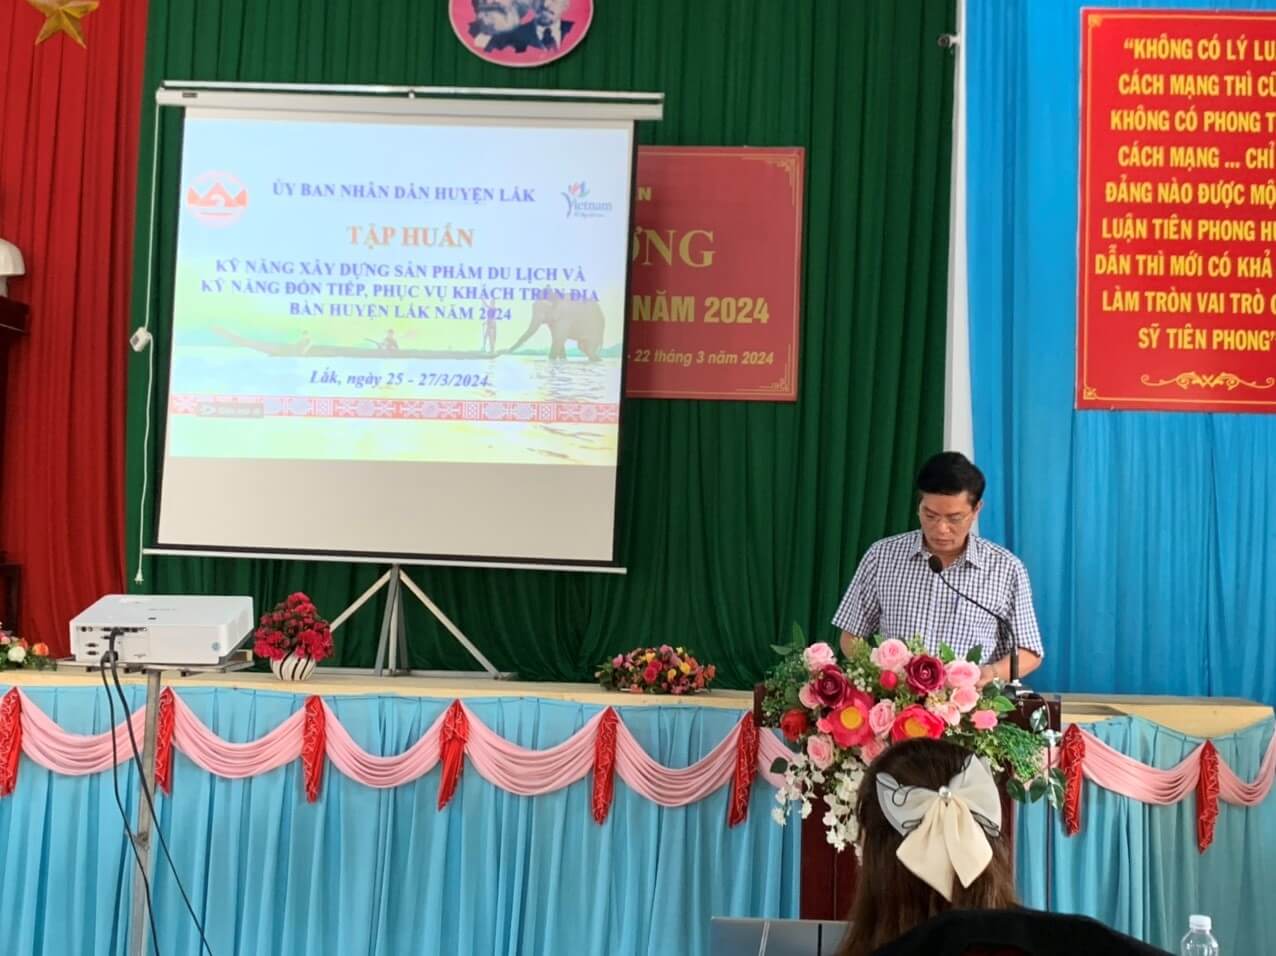 Lễ khai giảng tại trung tâm chính trị huyện Lắk